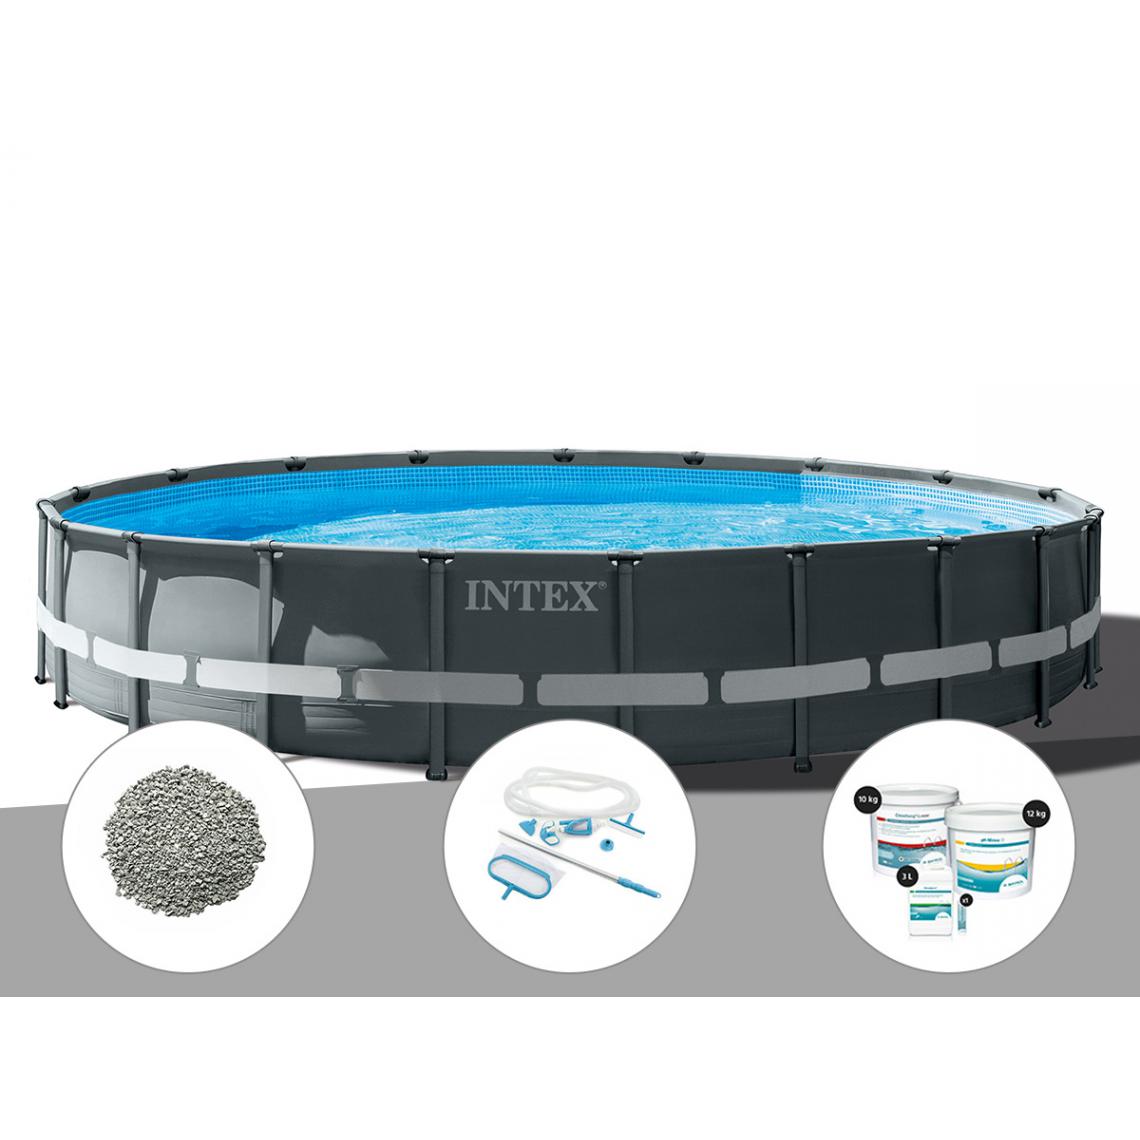 Intex - Kit piscine tubulaire Intex Ultra XTR Frame ronde 6,10 x 1,22 m + 20 kg de zéolite + Kit d'entretien + Kit de traitement au chlore - Piscine Tubulaire